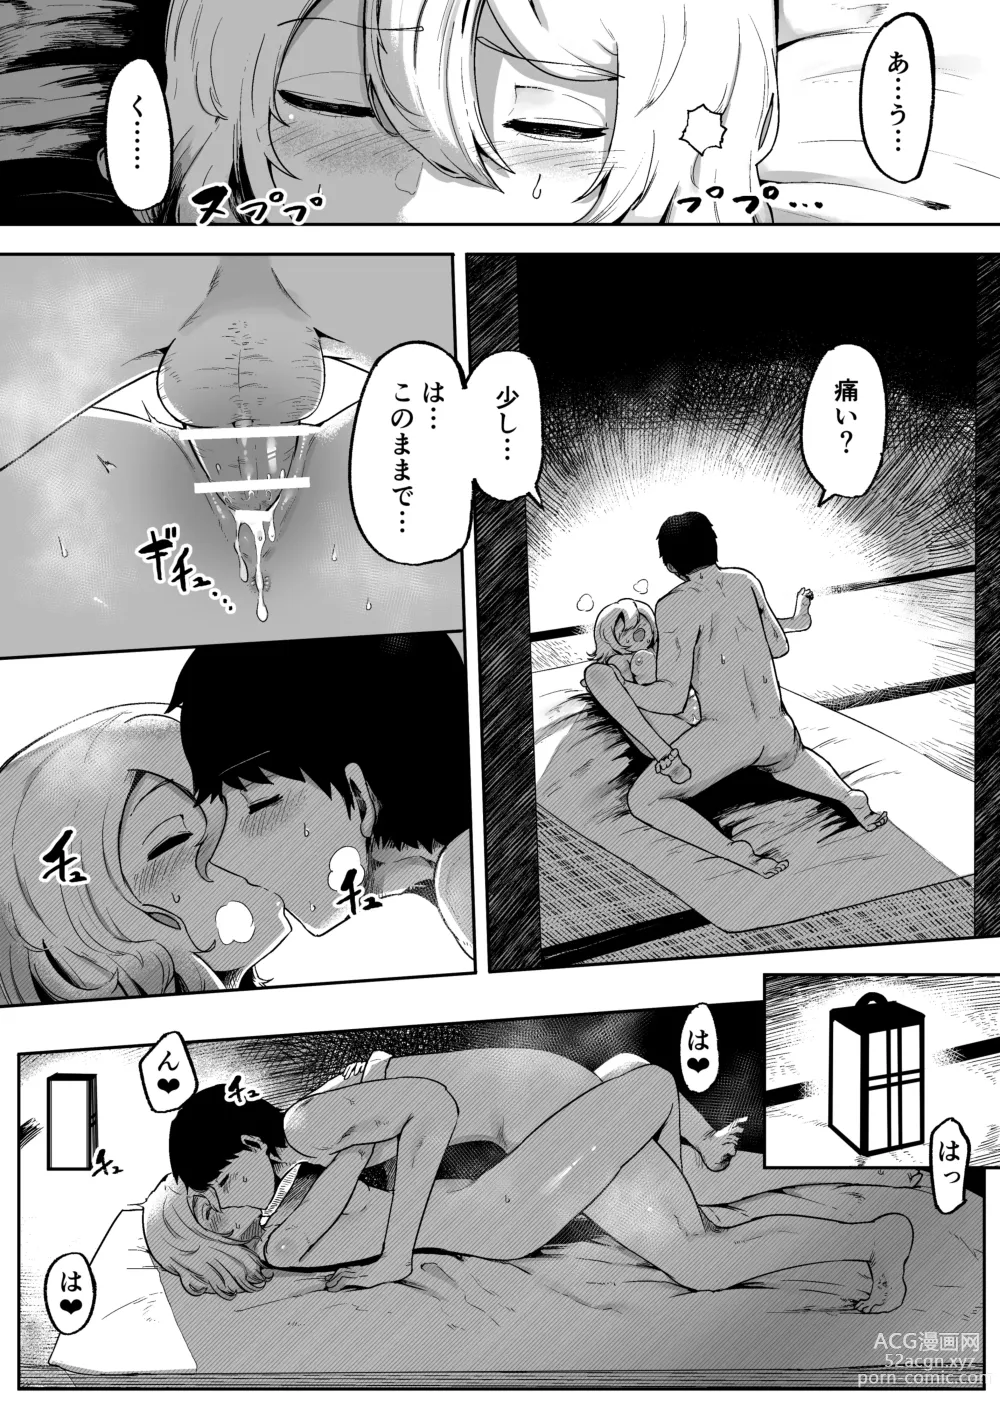 Page 23 of doujinshi Kamisama to Kodomo ga Dekiru made